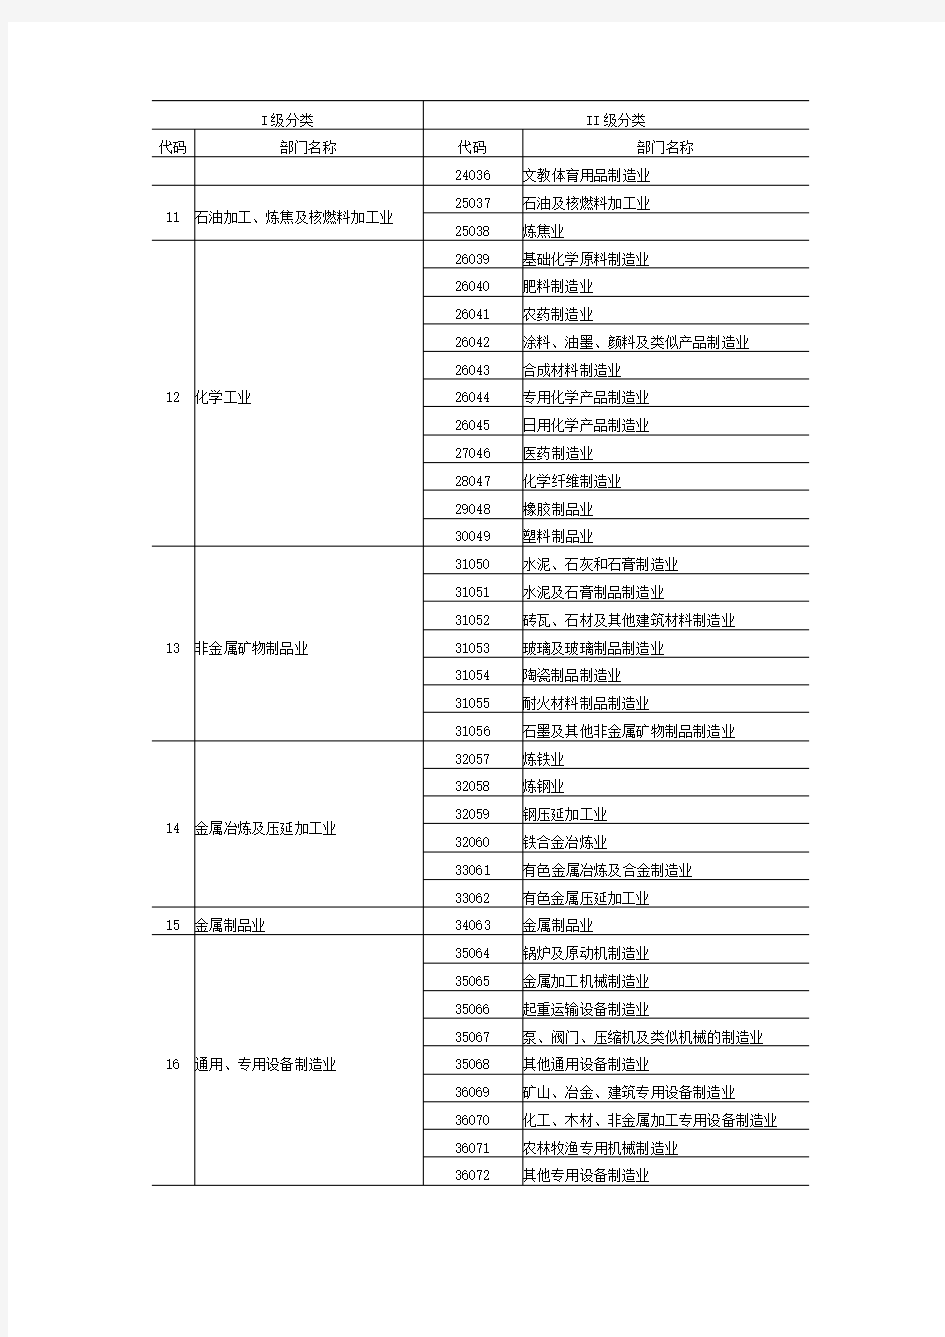 中国2007年投入产出表部门分类及代码